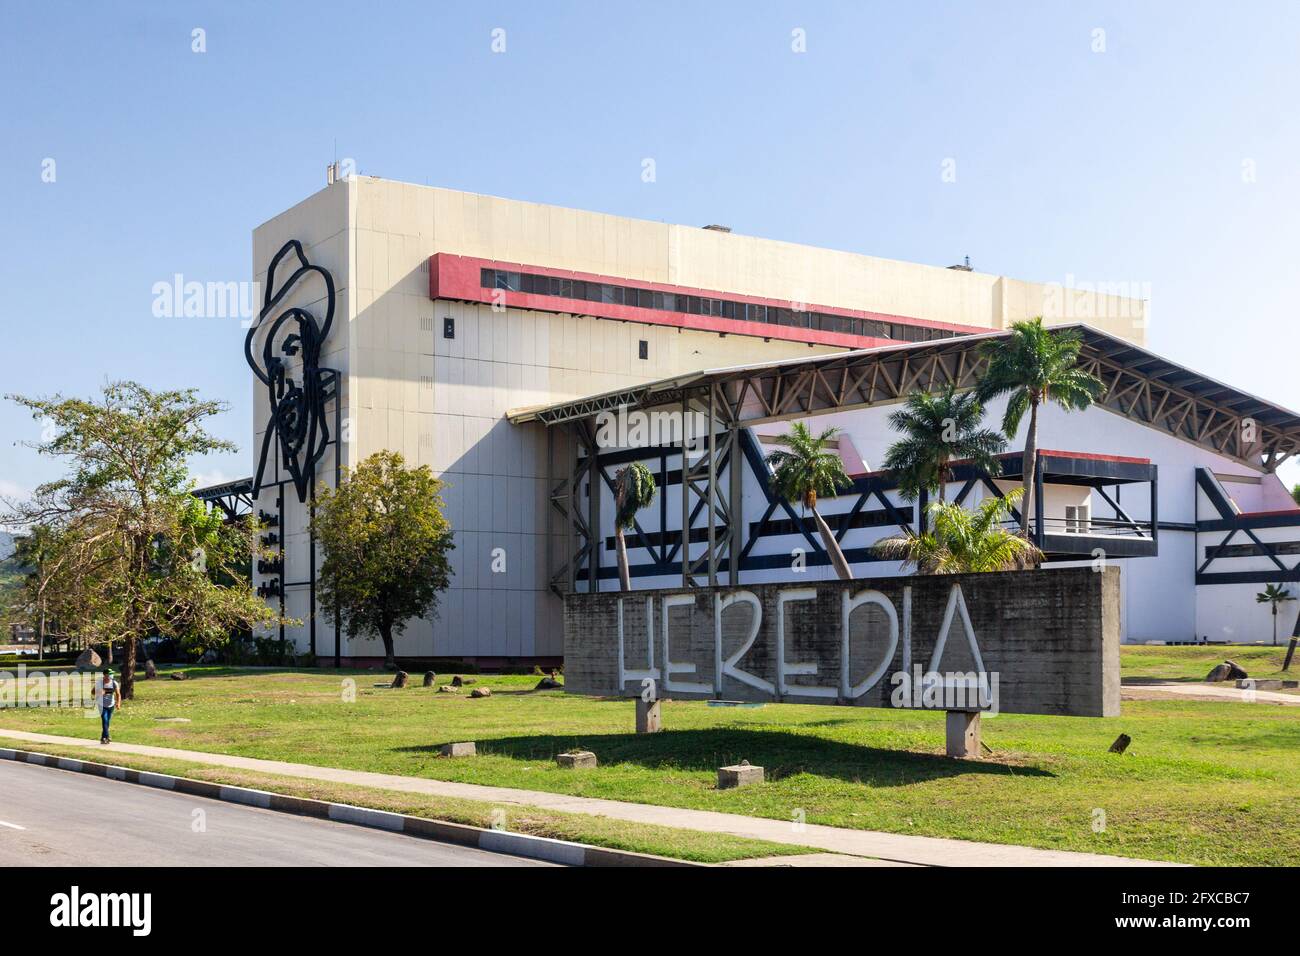 Vista exterior del Teatro Heredia en Santiago de Cuba. Foto de stock